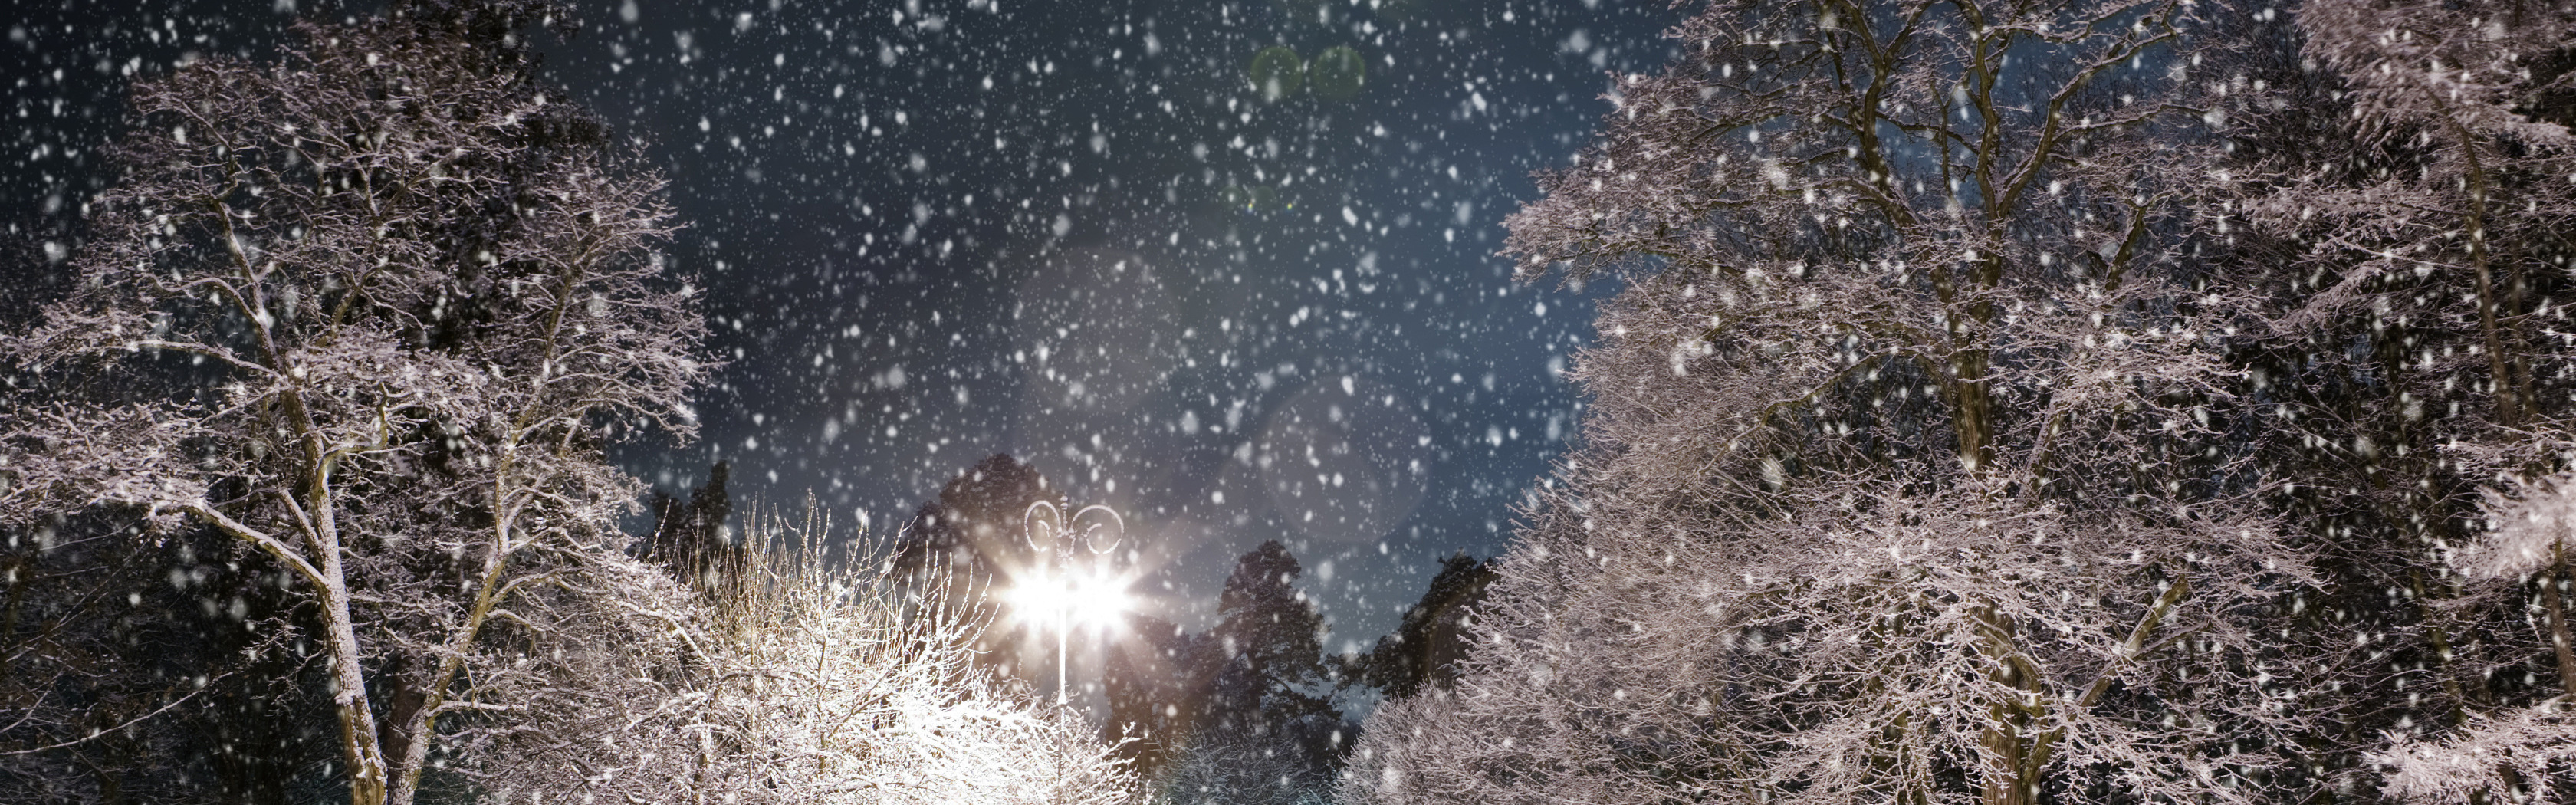 Падающий снег. Метель ночью. Вечер снег идет деревья. Снегопад небо. Ночью на мокрые деревья упал снег сравнение